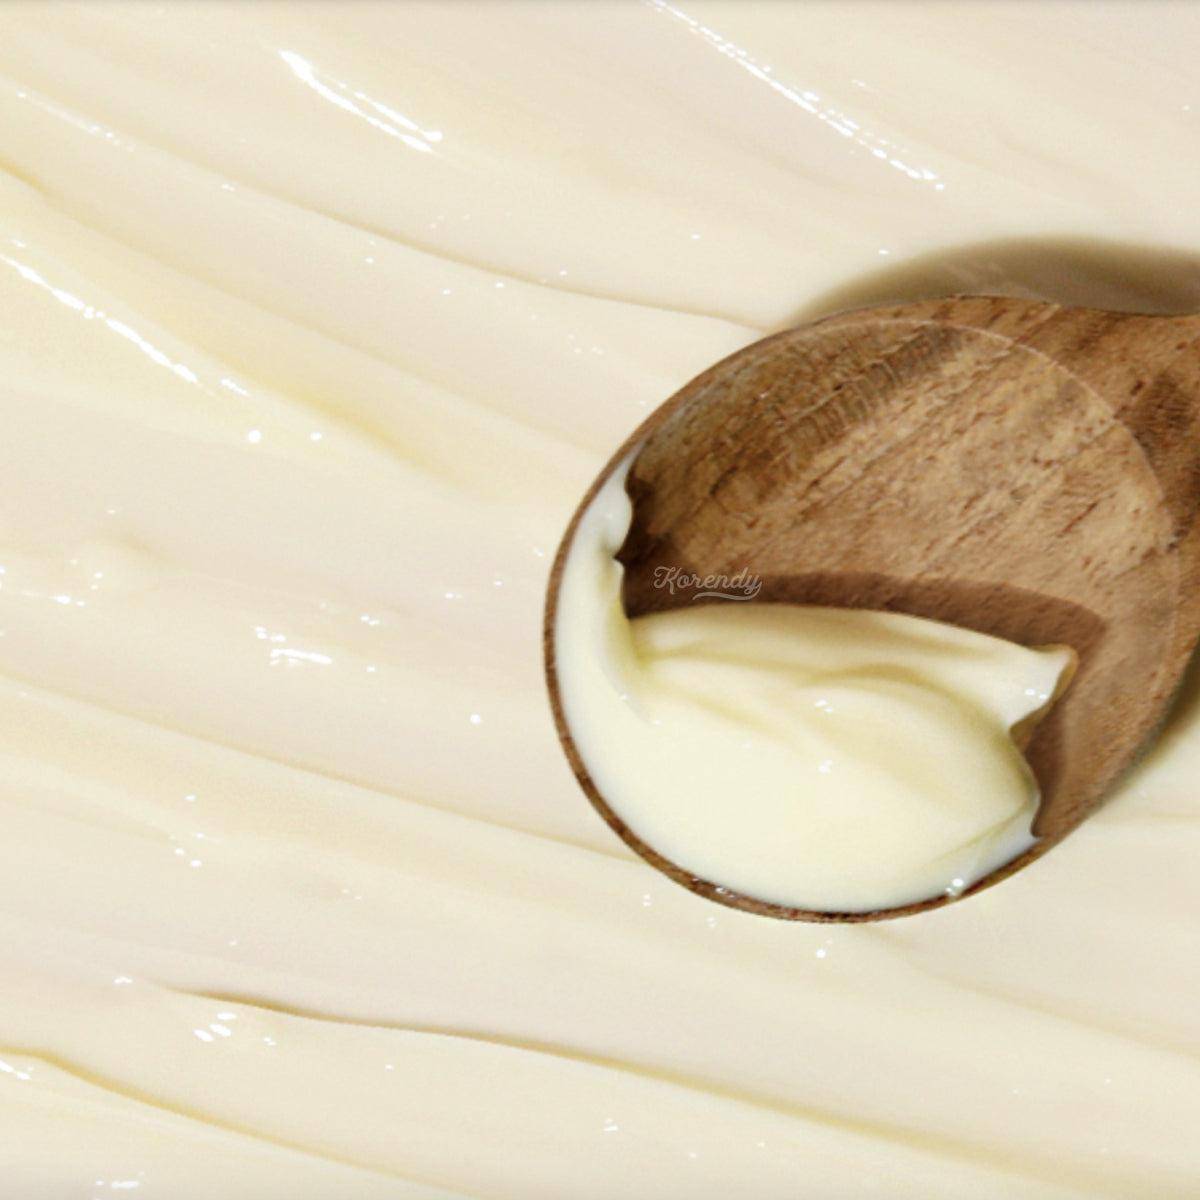 Manyo - Rosehip (Kuşburnu) Repair Cream 50ml Krem Korendy Türkiye Turkey Kore Kozmetik Kbeauty Cilt Bakım 